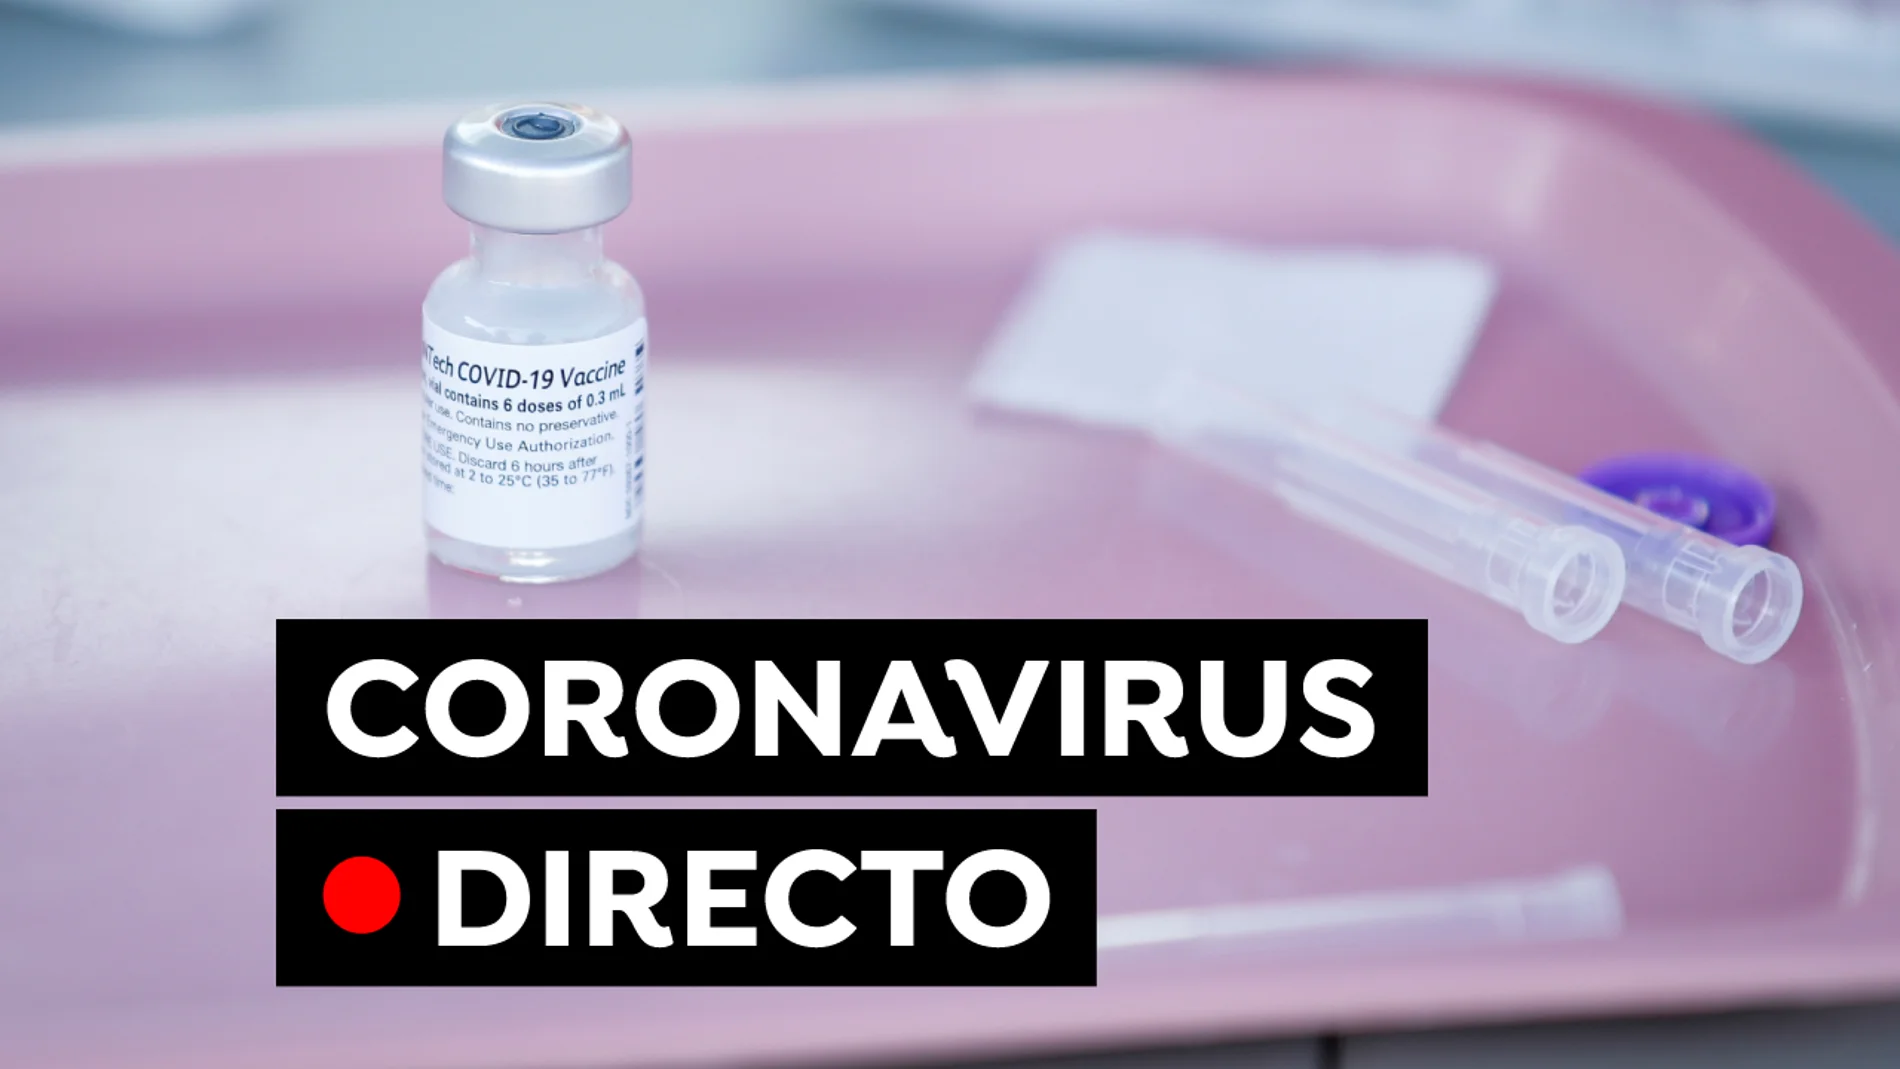 Coronavirus hoy: Vacuna contra el COVID-19 y contagios en Madrid, Cataluña, Andalucía, en directo